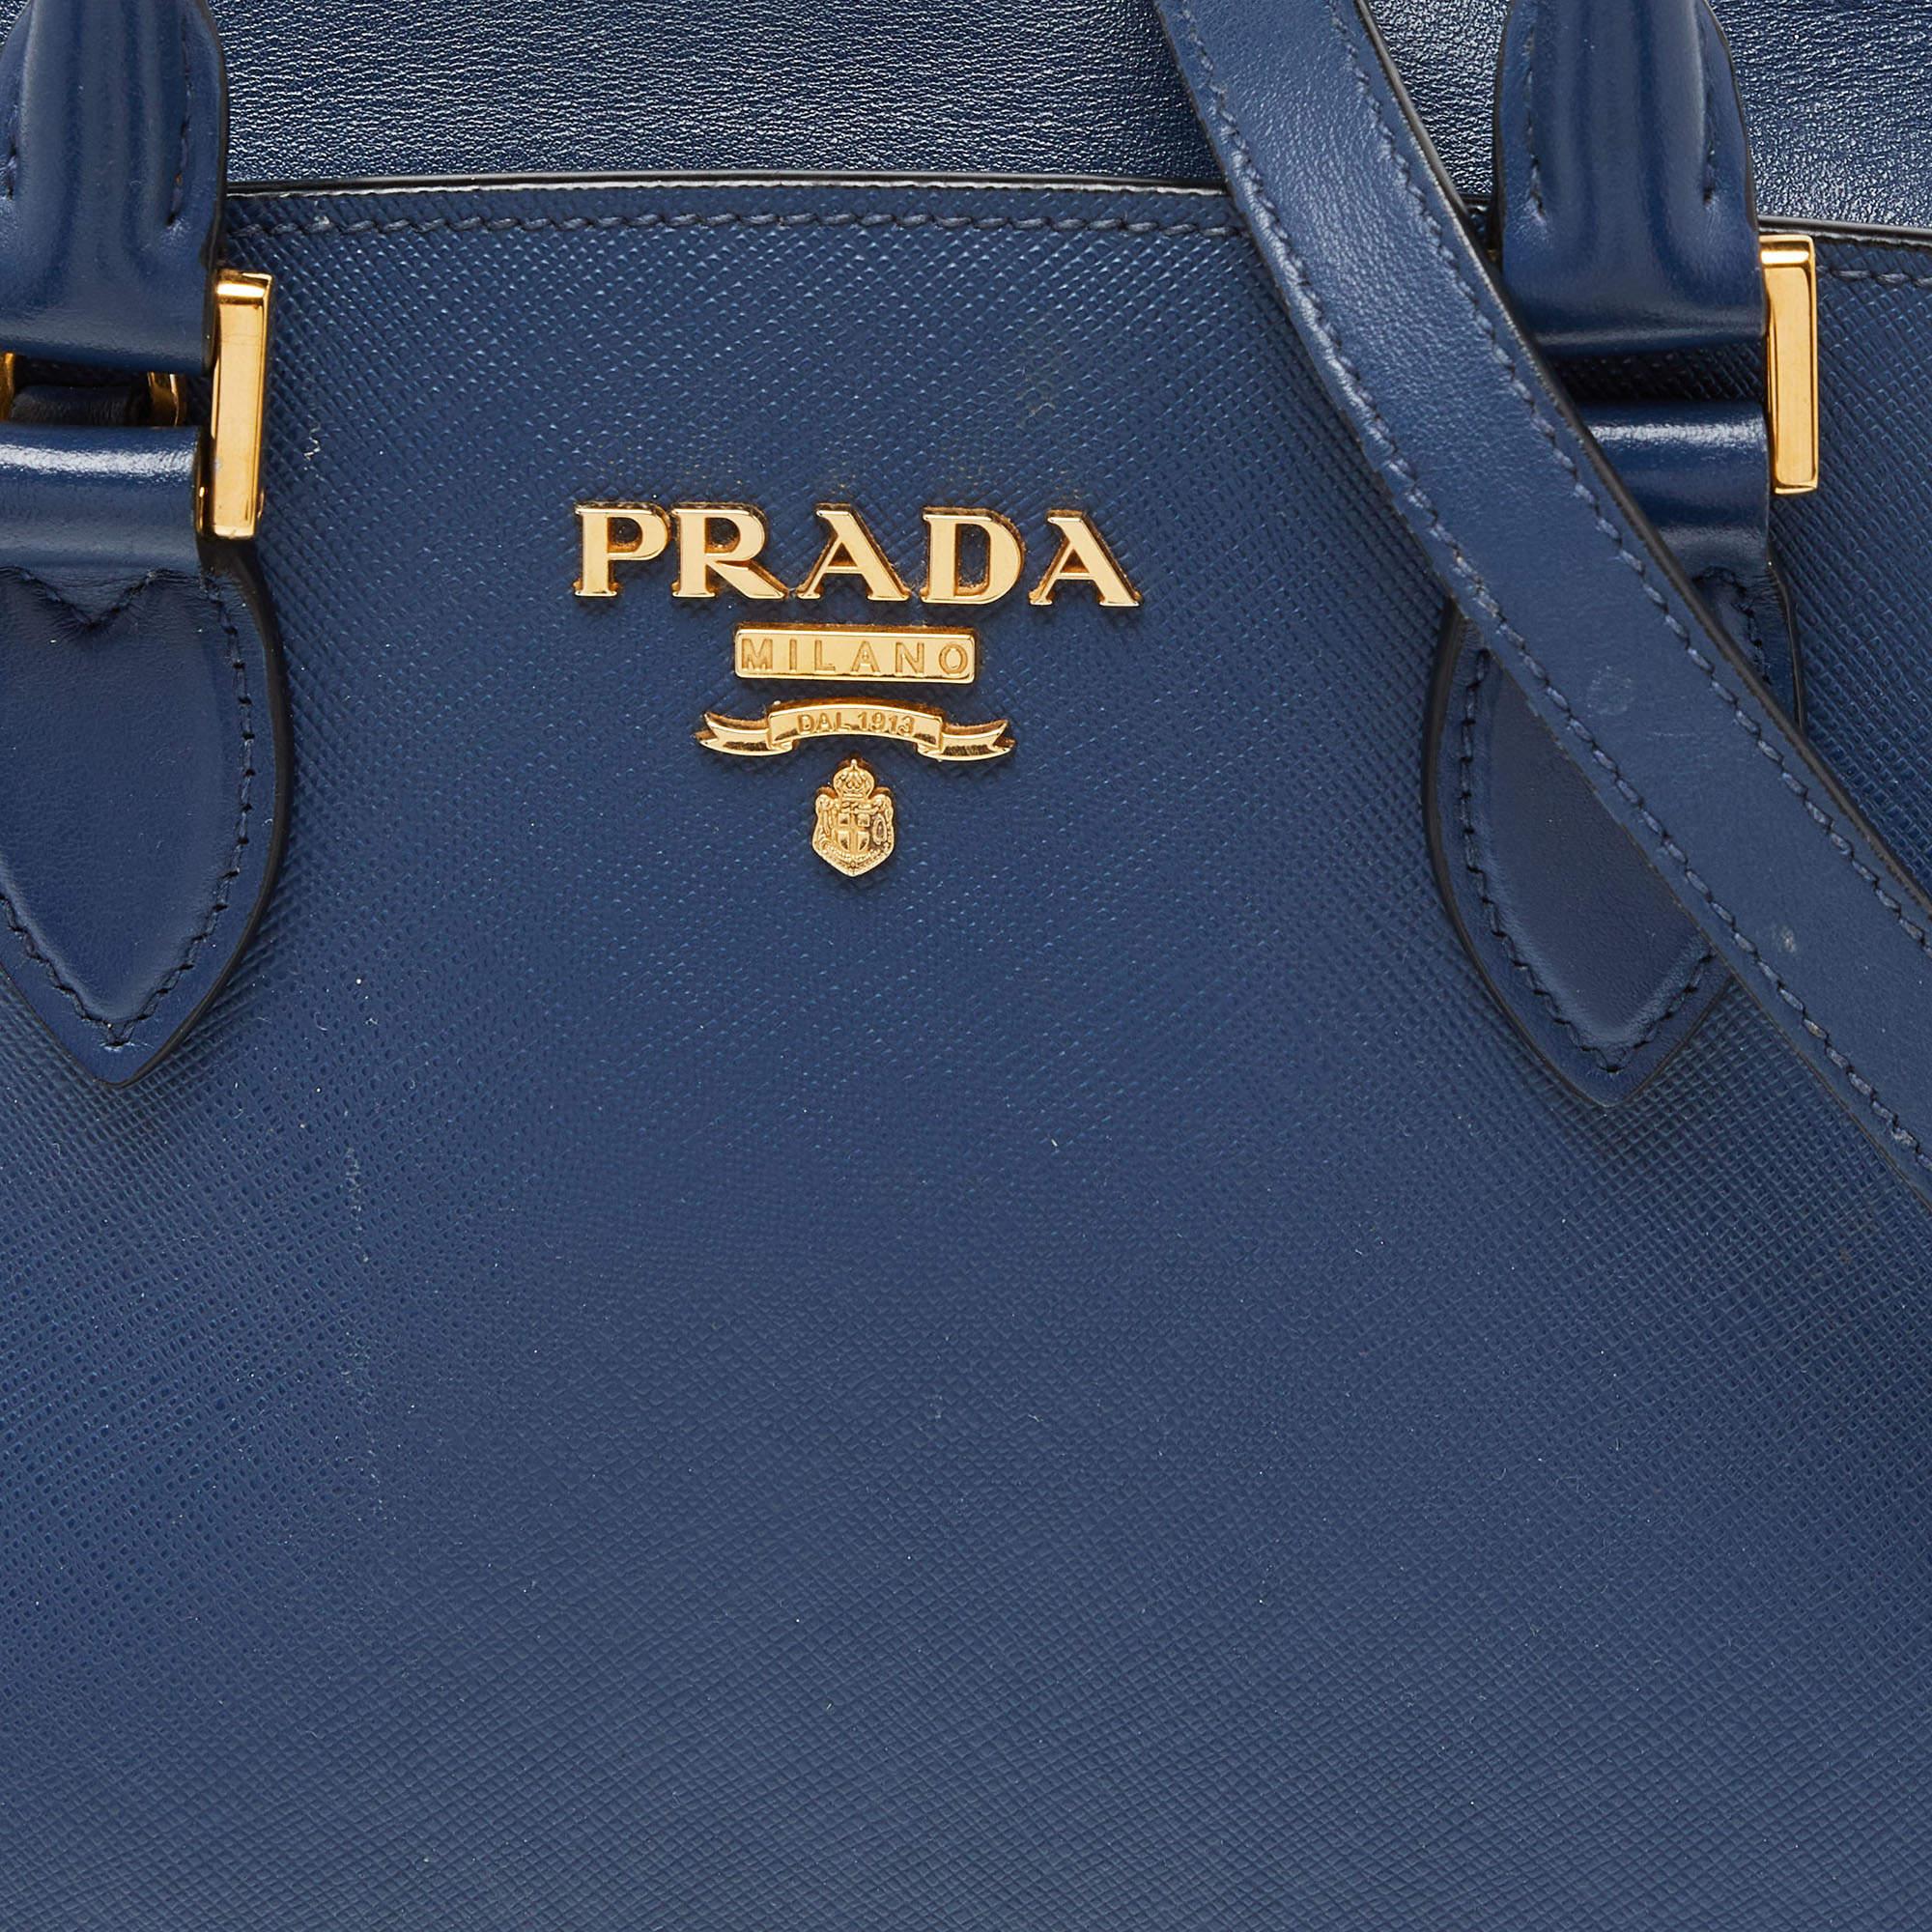 Prada Blue Saffiano/Soft Leather Double Handle Tote In Good Condition For Sale In Dubai, Al Qouz 2